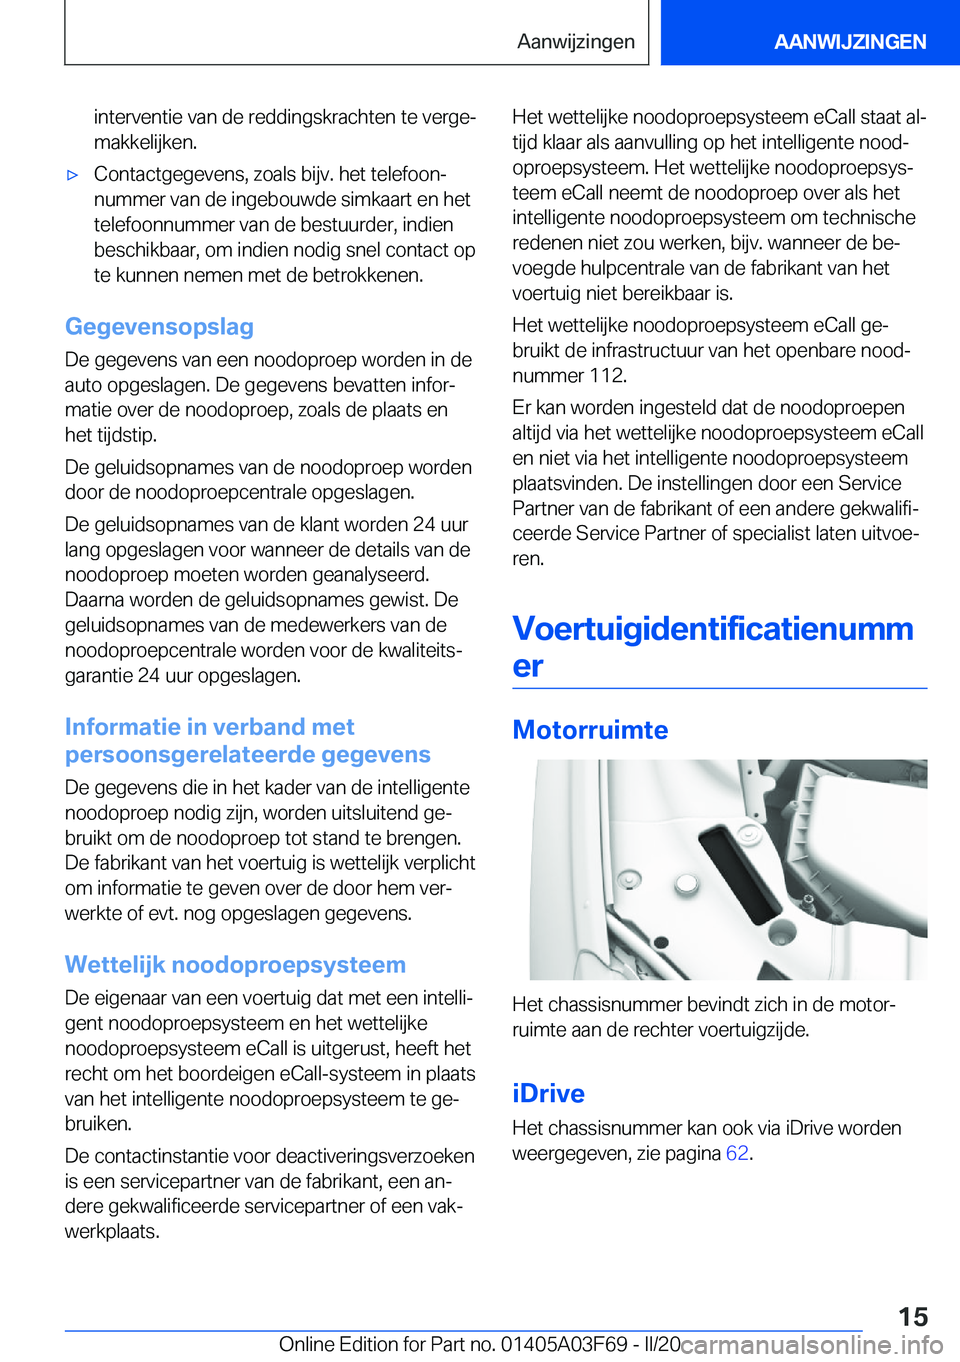 BMW 3 SERIES 2020  Instructieboekjes (in Dutch) �i�n�t�e�r�v�e�n�t�i�e��v�a�n��d�e��r�e�d�d�i�n�g�s�k�r�a�c�h�t�e�n��t�e��v�e�r�g�ej
�m�a�k�k�e�l�i�j�k�e�n�.'x�C�o�n�t�a�c�t�g�e�g�e�v�e�n�s�,��z�o�a�l�s��b�i�j�v�.��h�e�t��t�e�l�e�f�o�